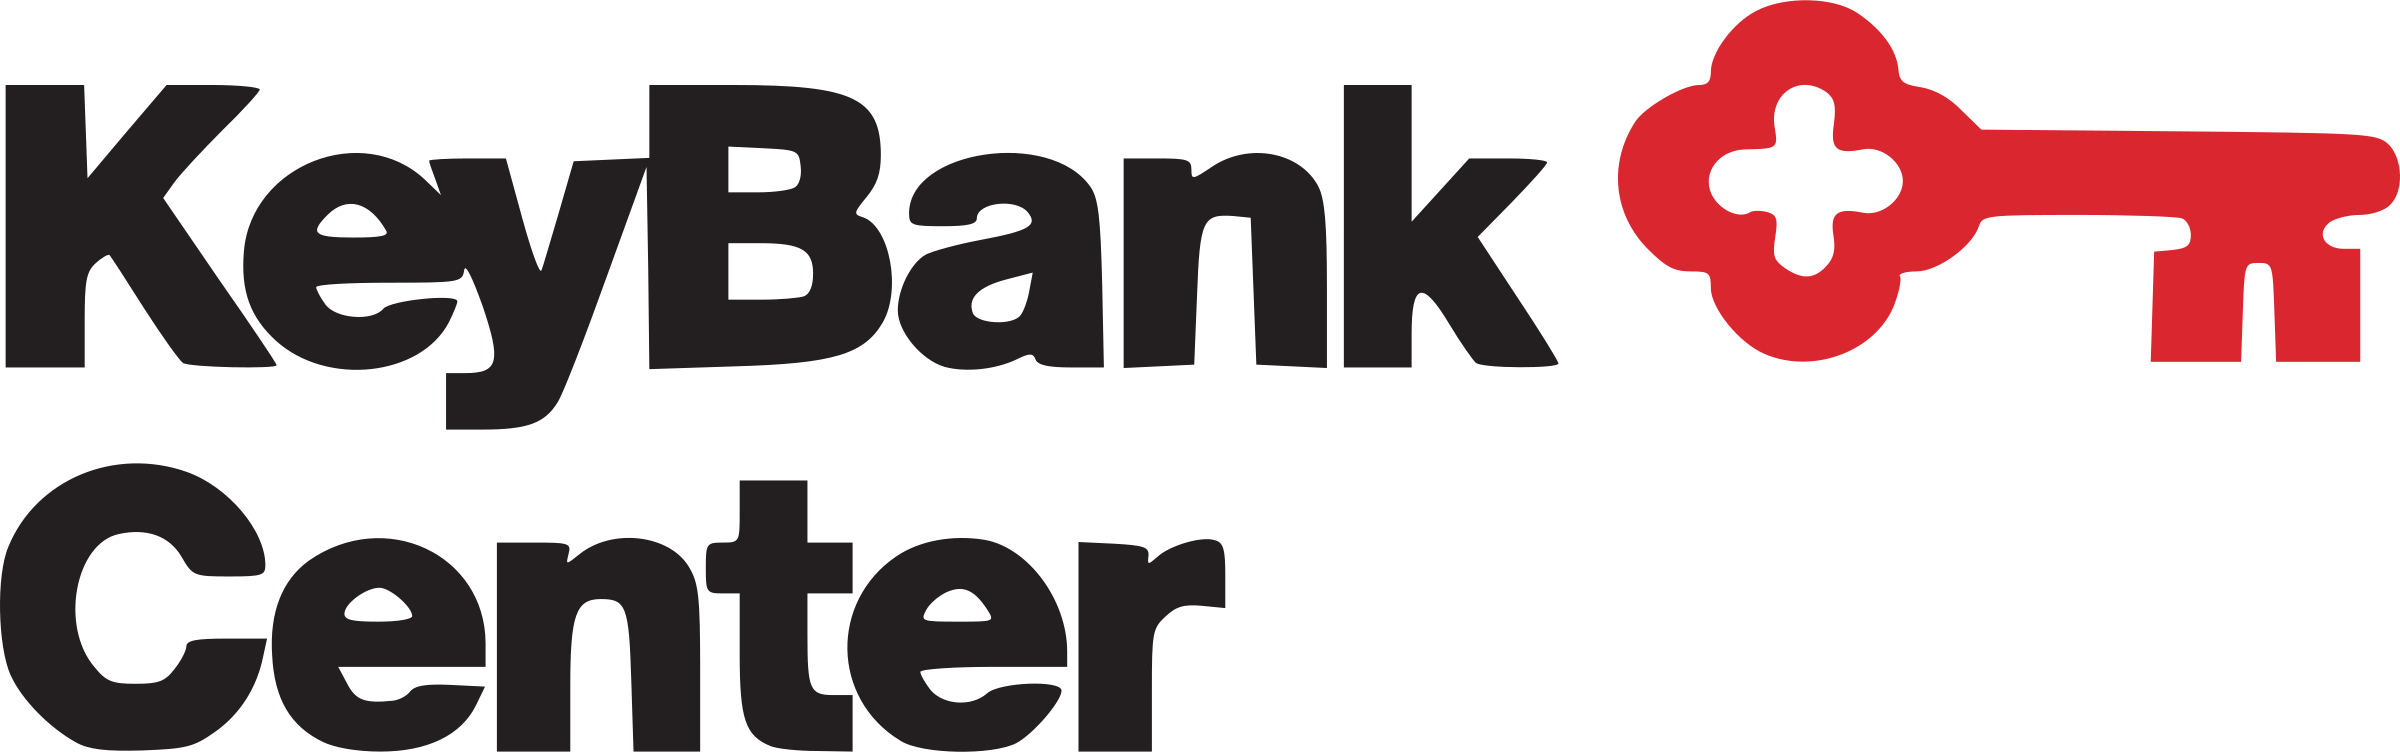 Keybank Center Logo PNG Transparent & SVG Vector.